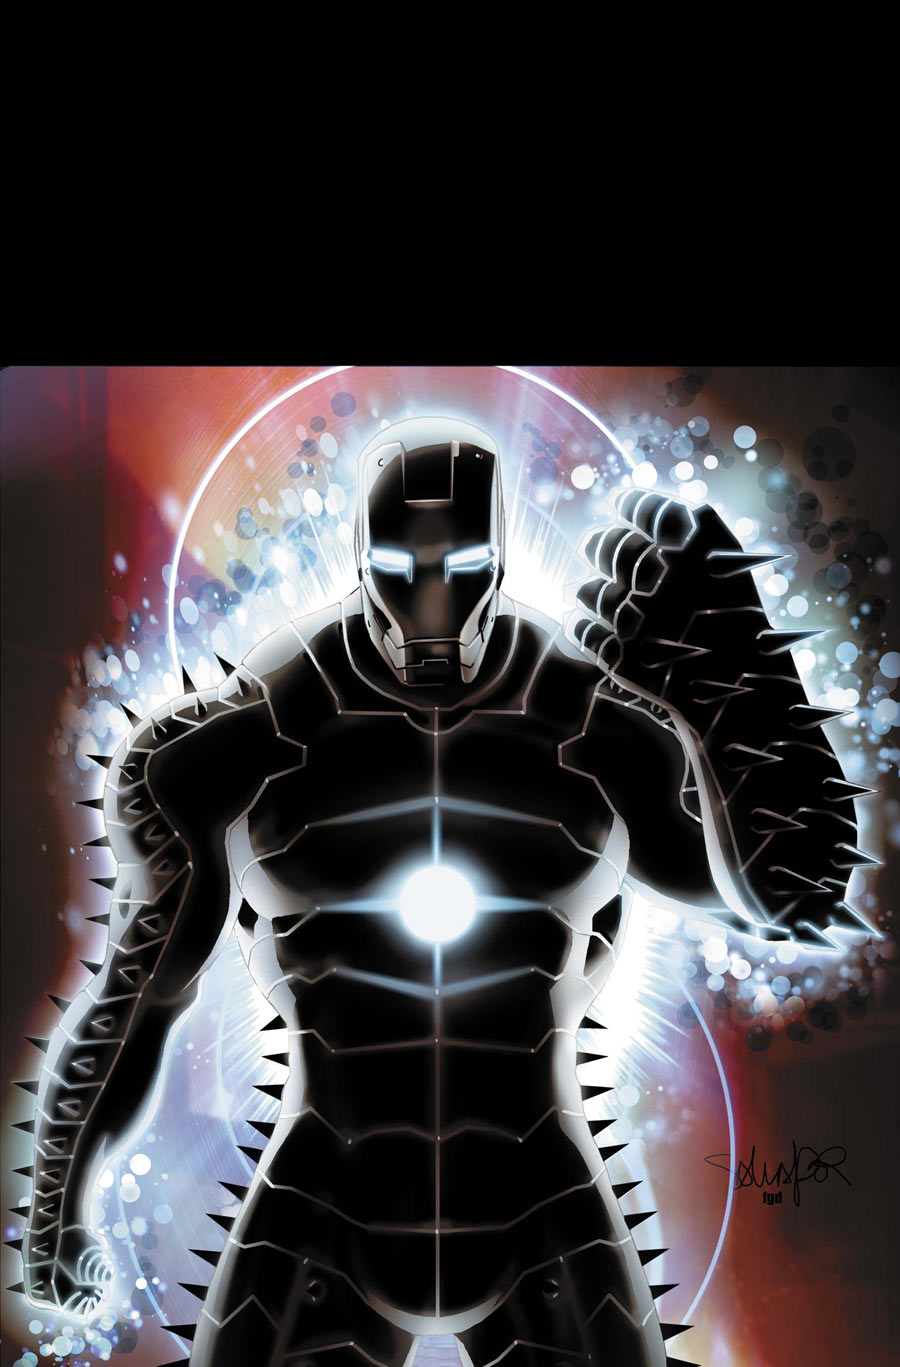 Invincible Iron Man #509